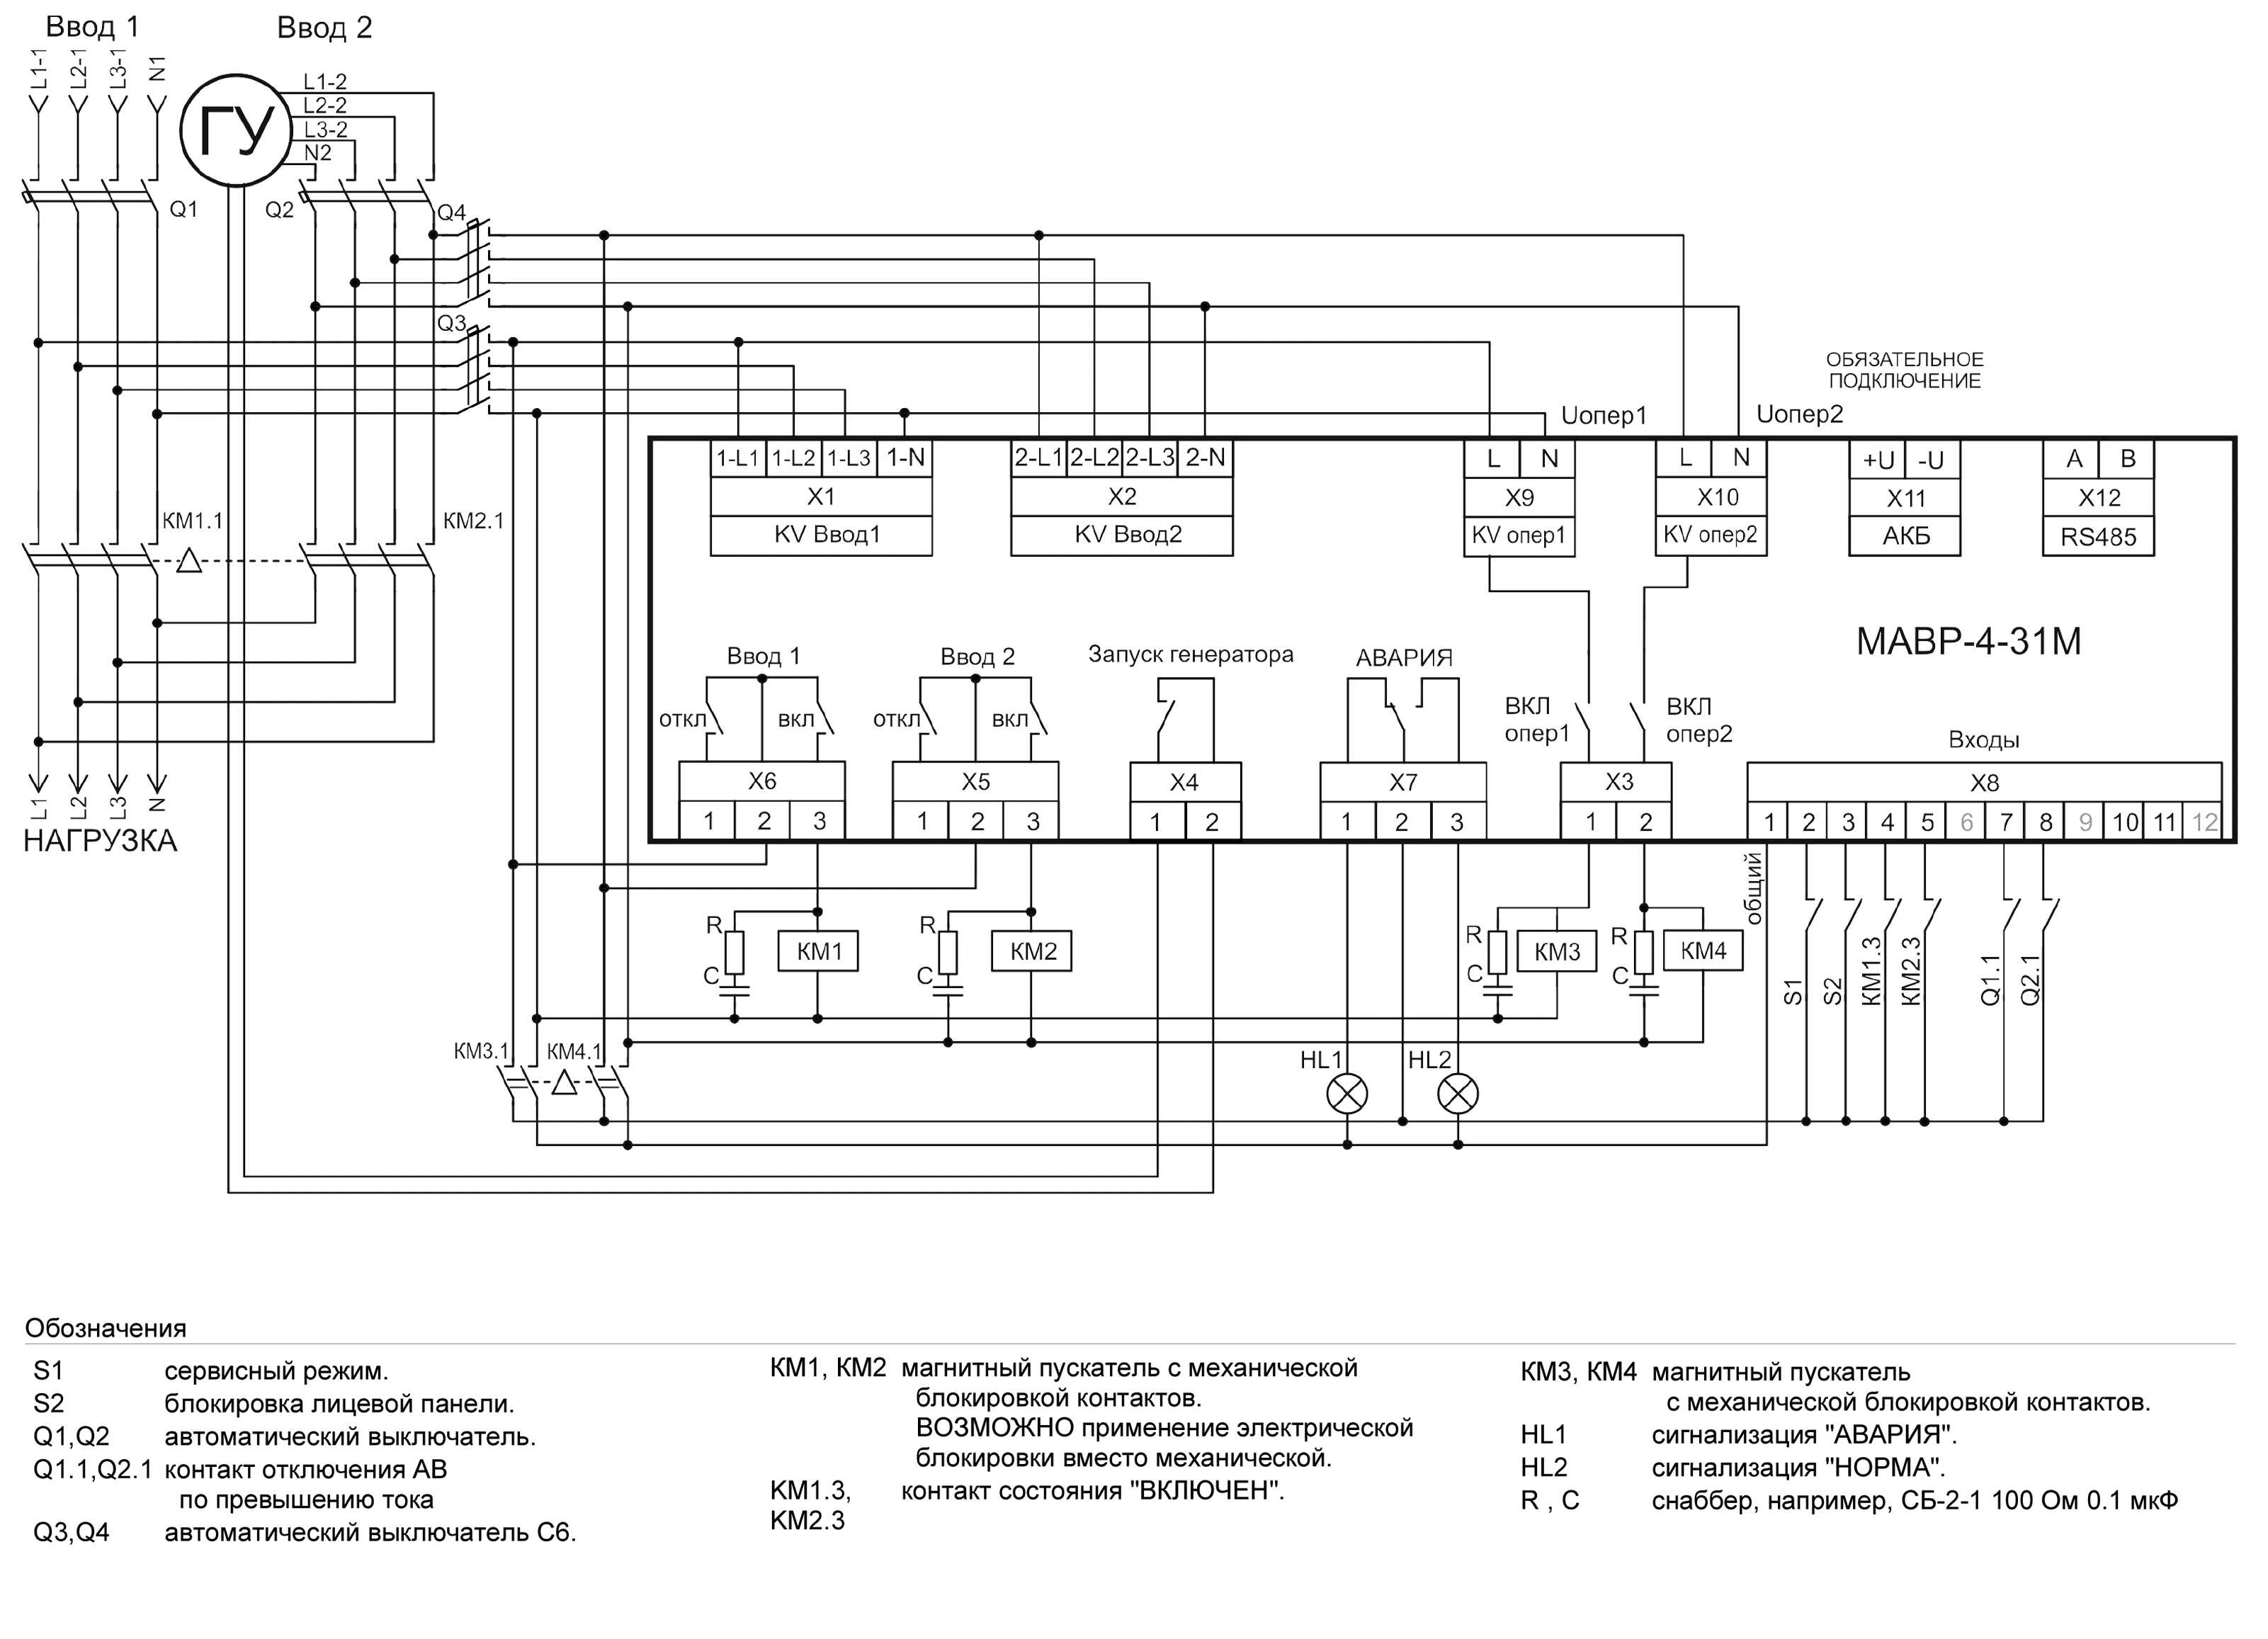 Схема АВР на магнитных пускателях 3-х фазный ввод и 3-фазный генератор